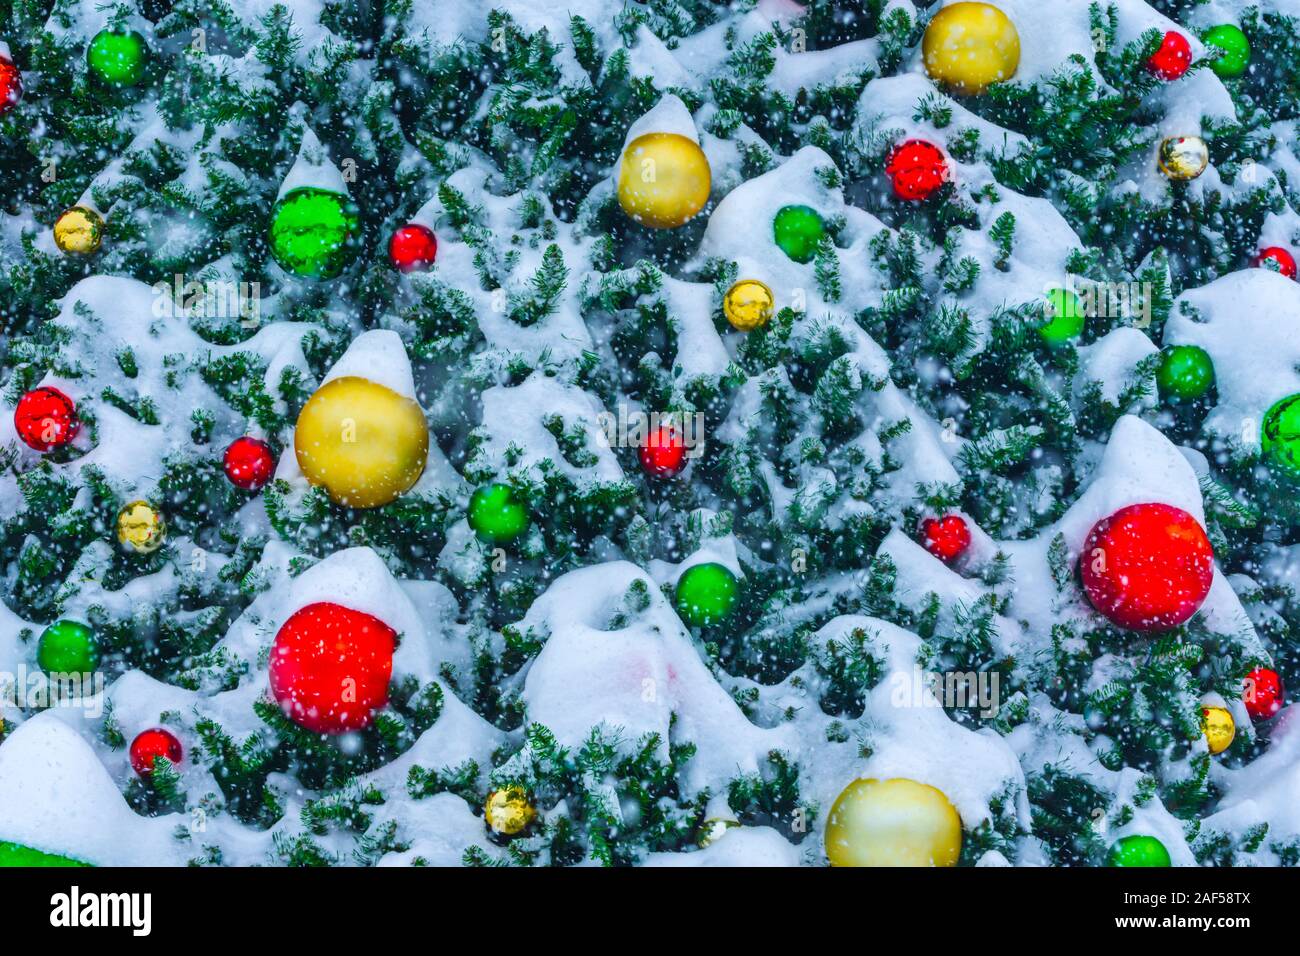 Dettaglio delle decorazioni di Natale sulla struttura esterna con neve fresca. Fotografato durante deboli nevicate in novembre a Castle Rock Colorado US. Foto Stock